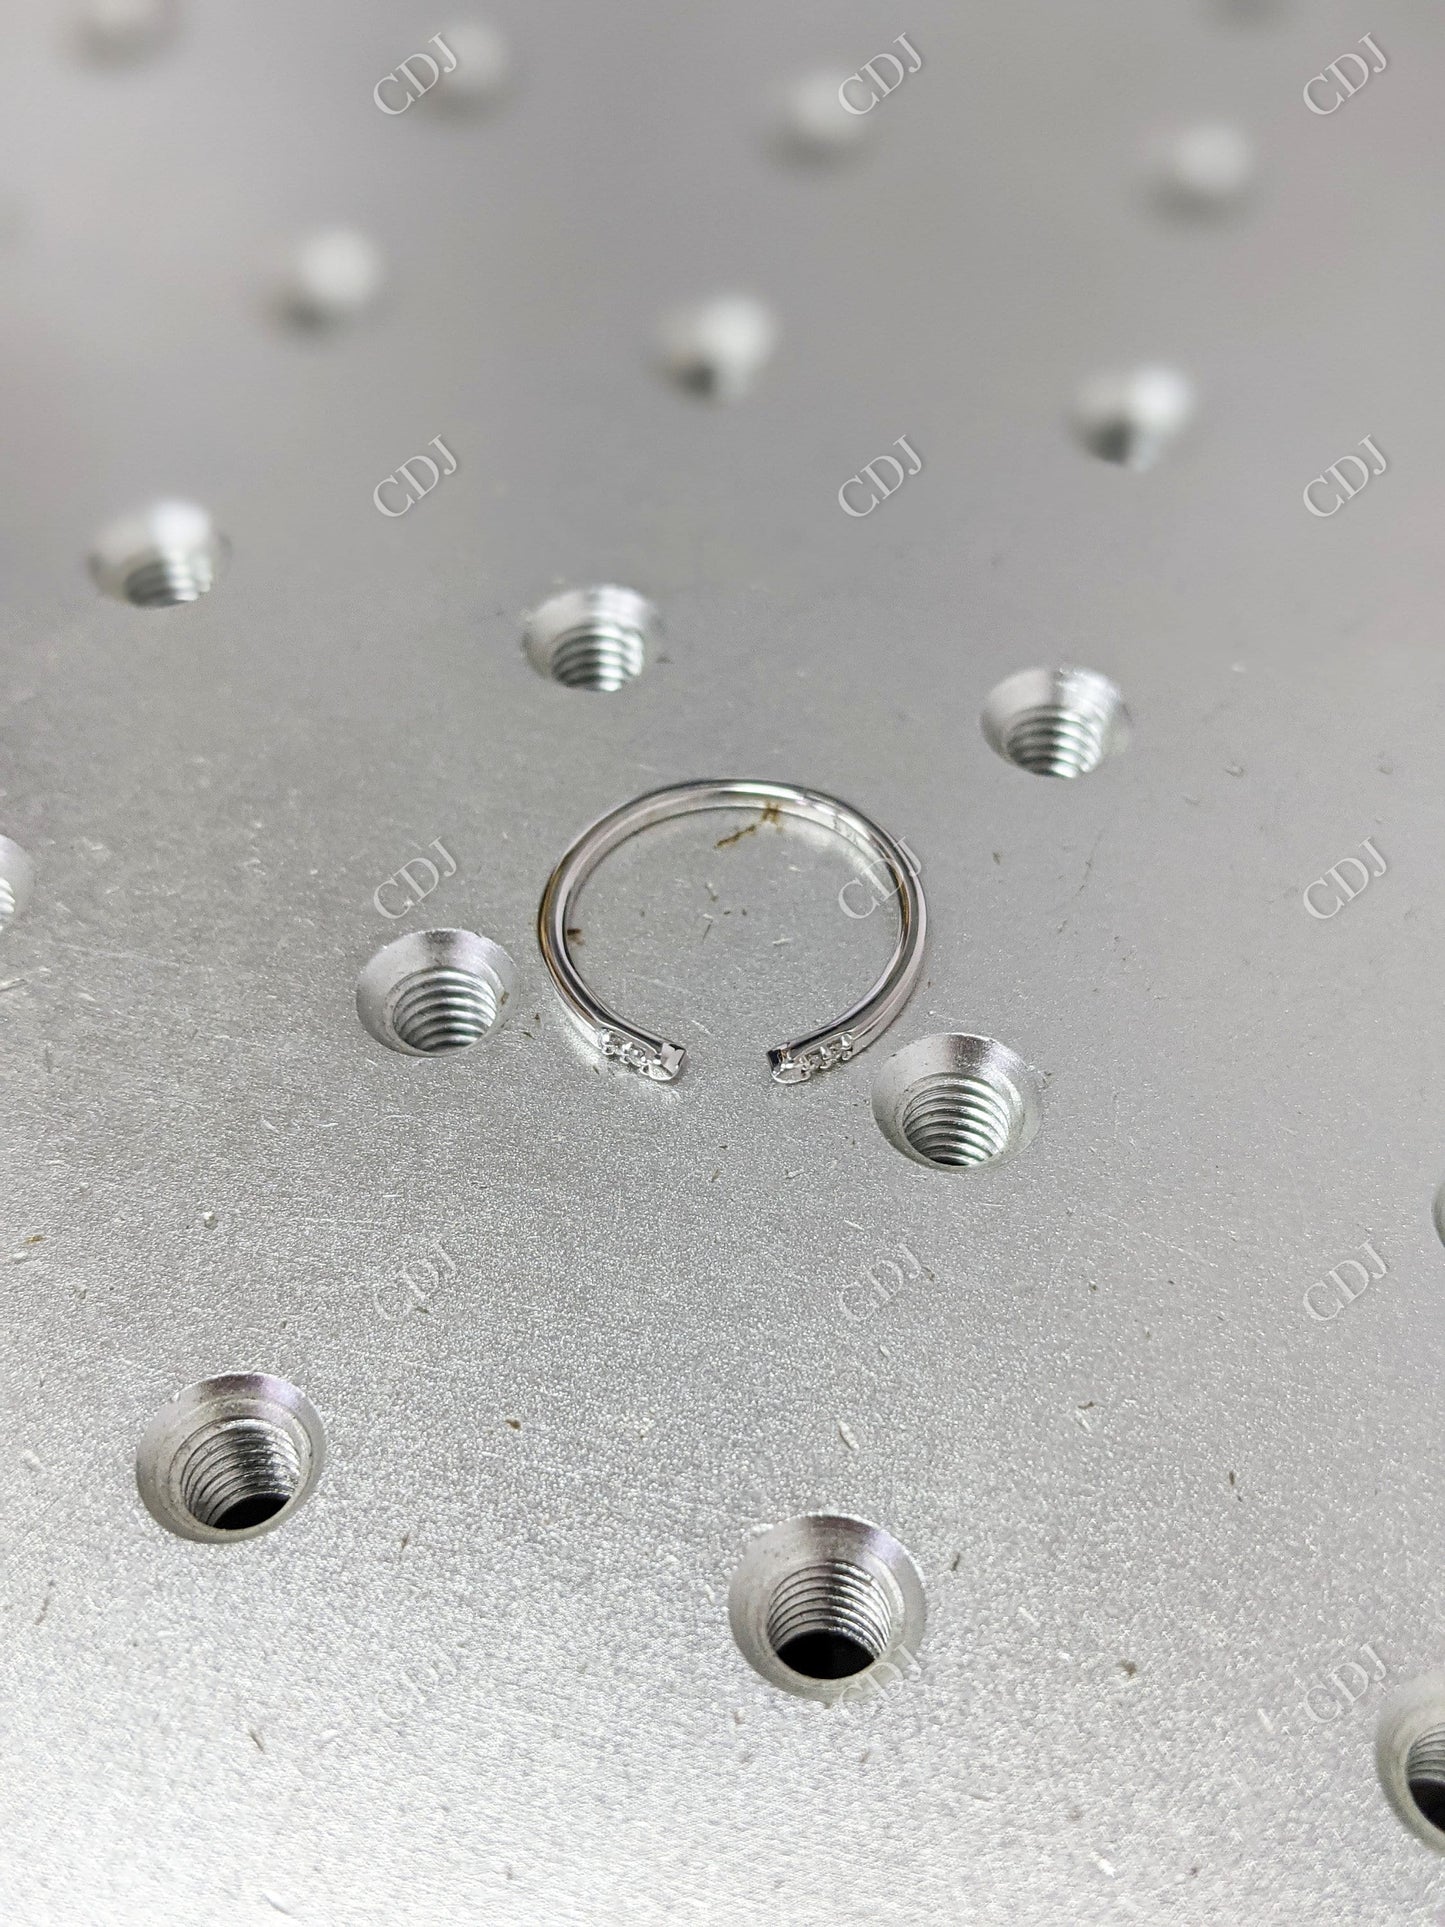 0.05CT Round Cut CVD Diamond Minimalist Adjustable Wedding Band  customdiamjewel   